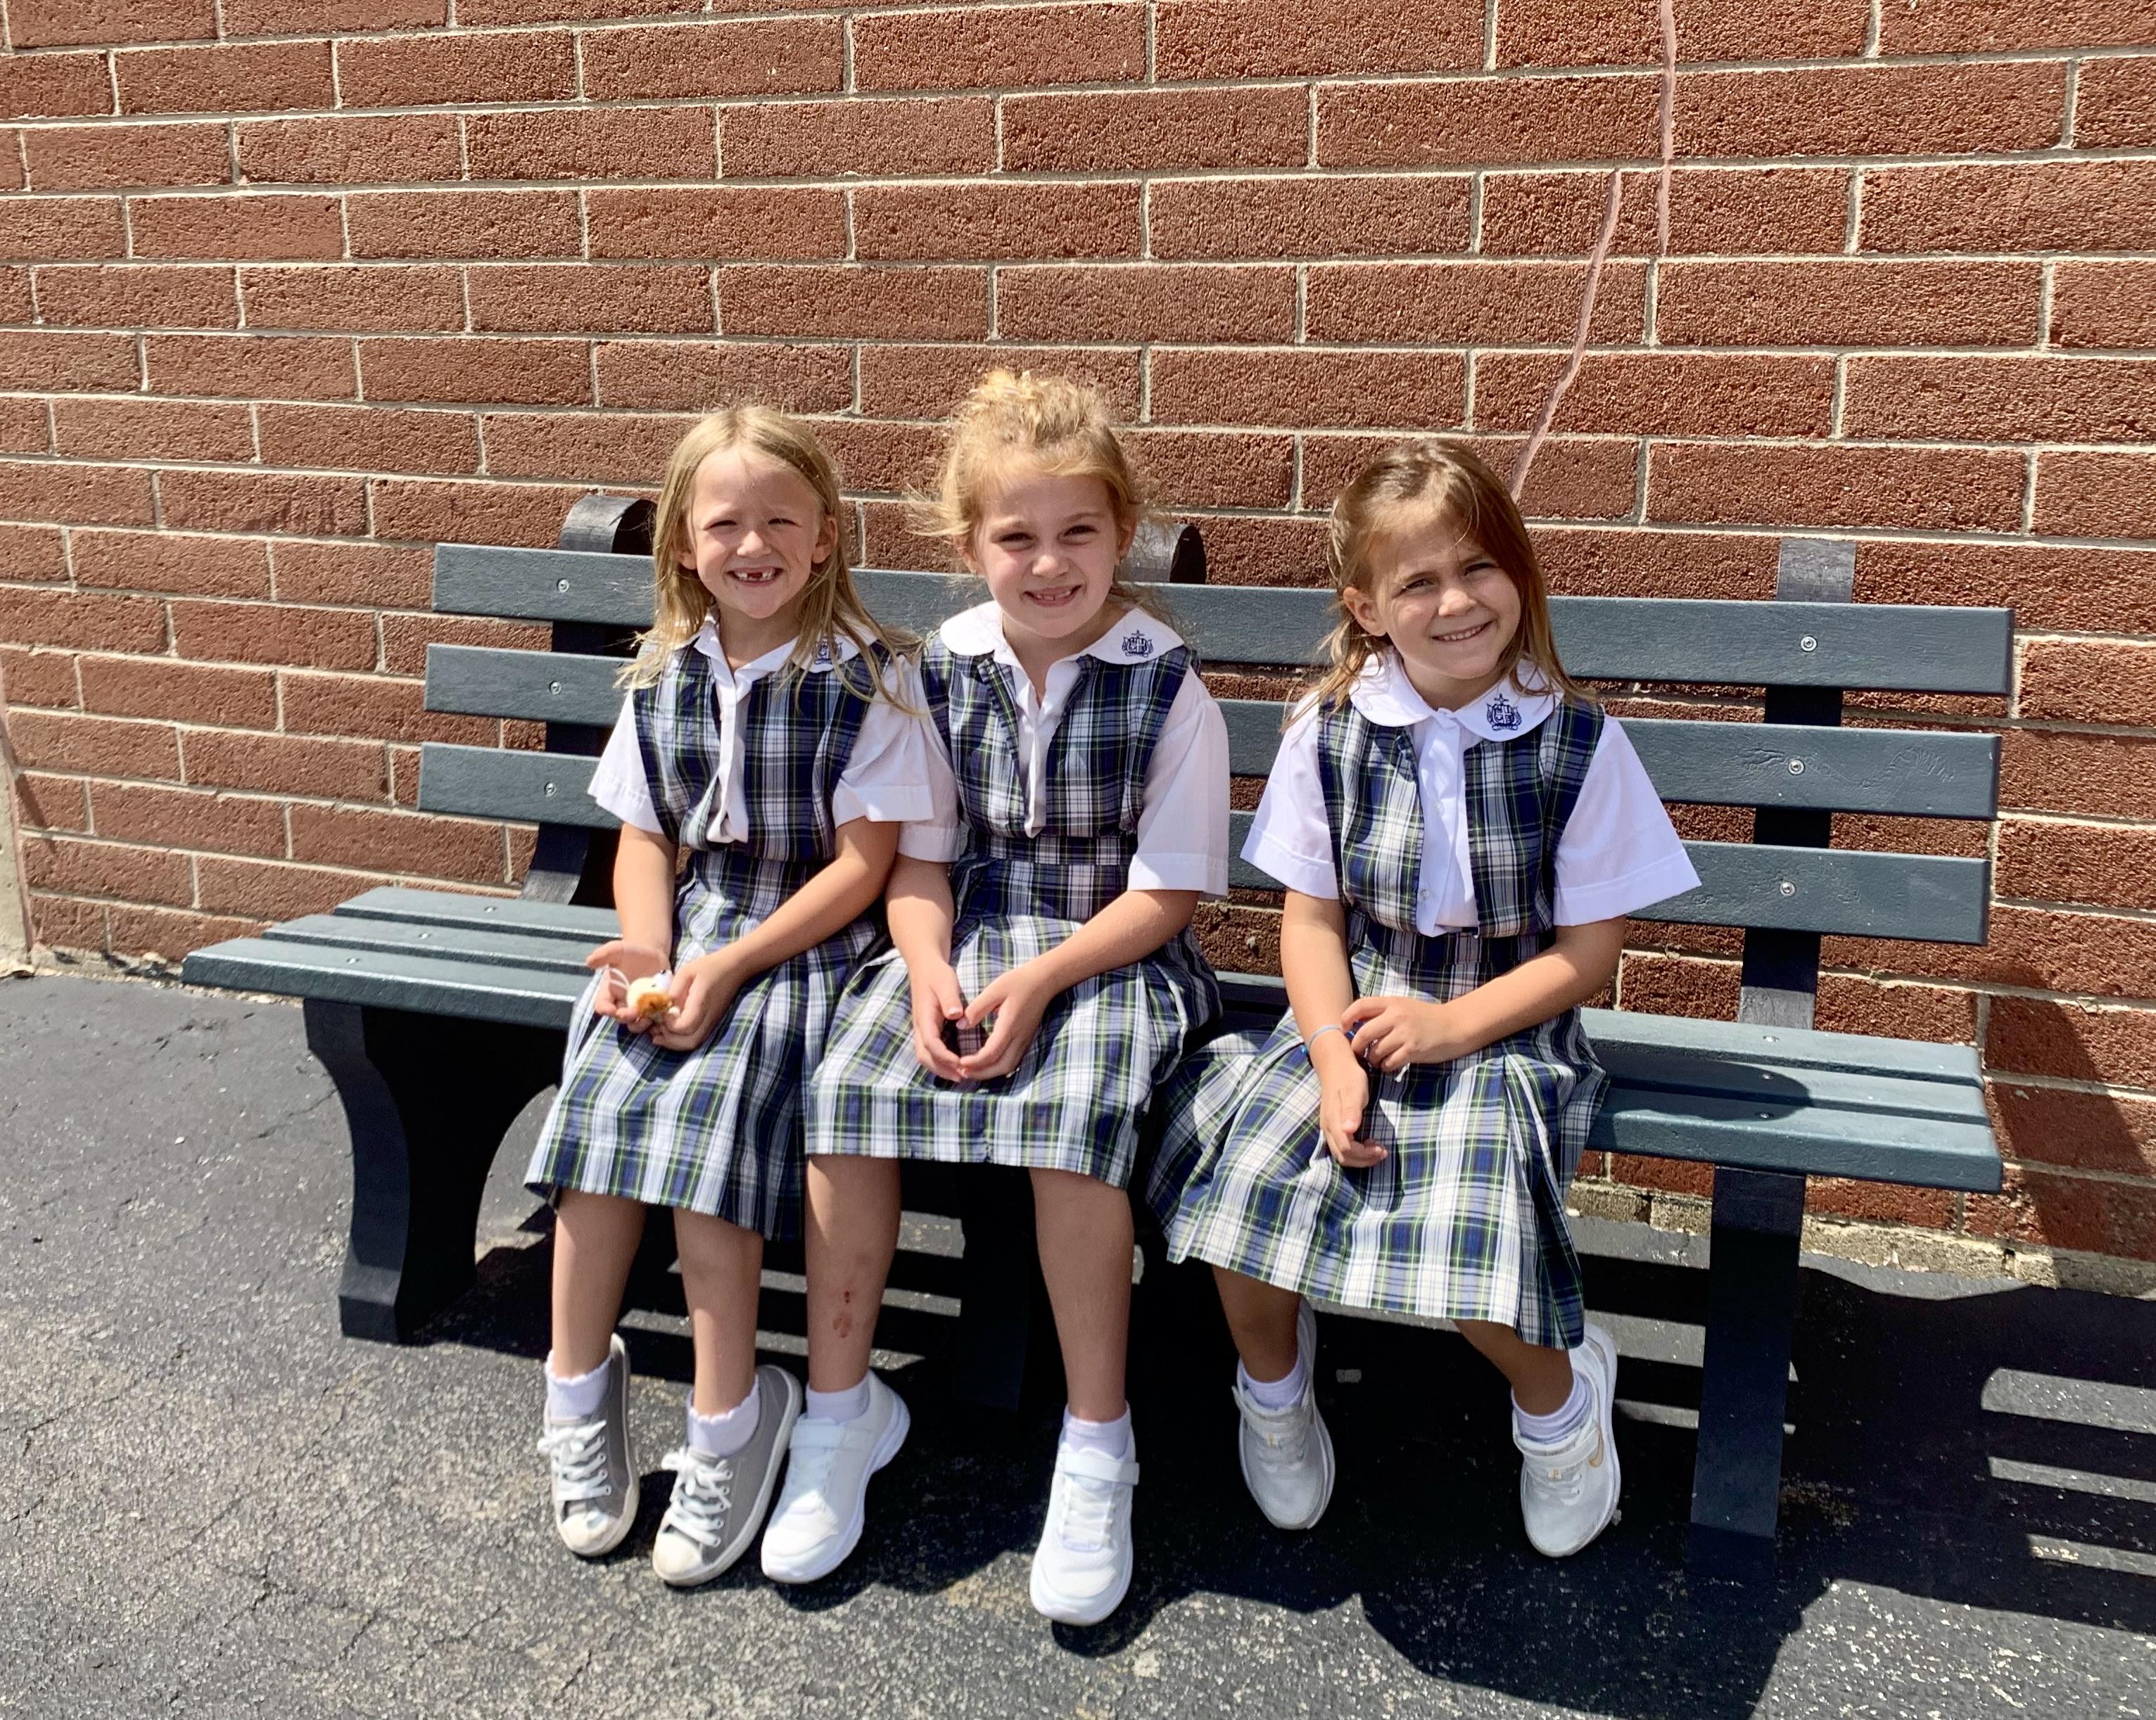 Girls sitting on bench